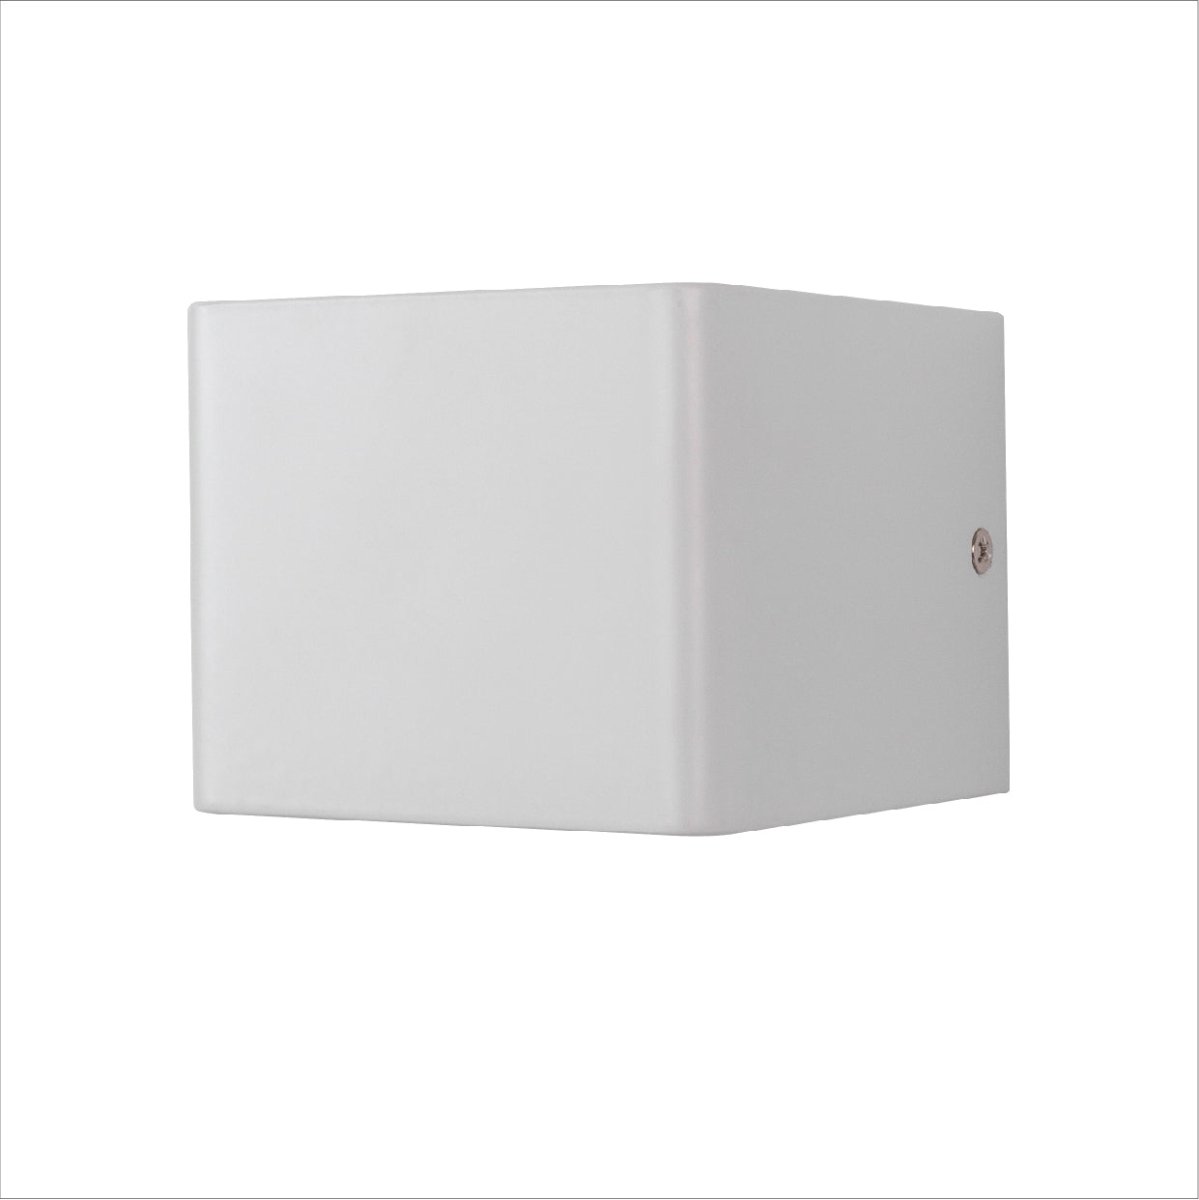 Main image of LED Cuboid Wall Light 5W Cool White 4000K White | TEKLED 151-19620